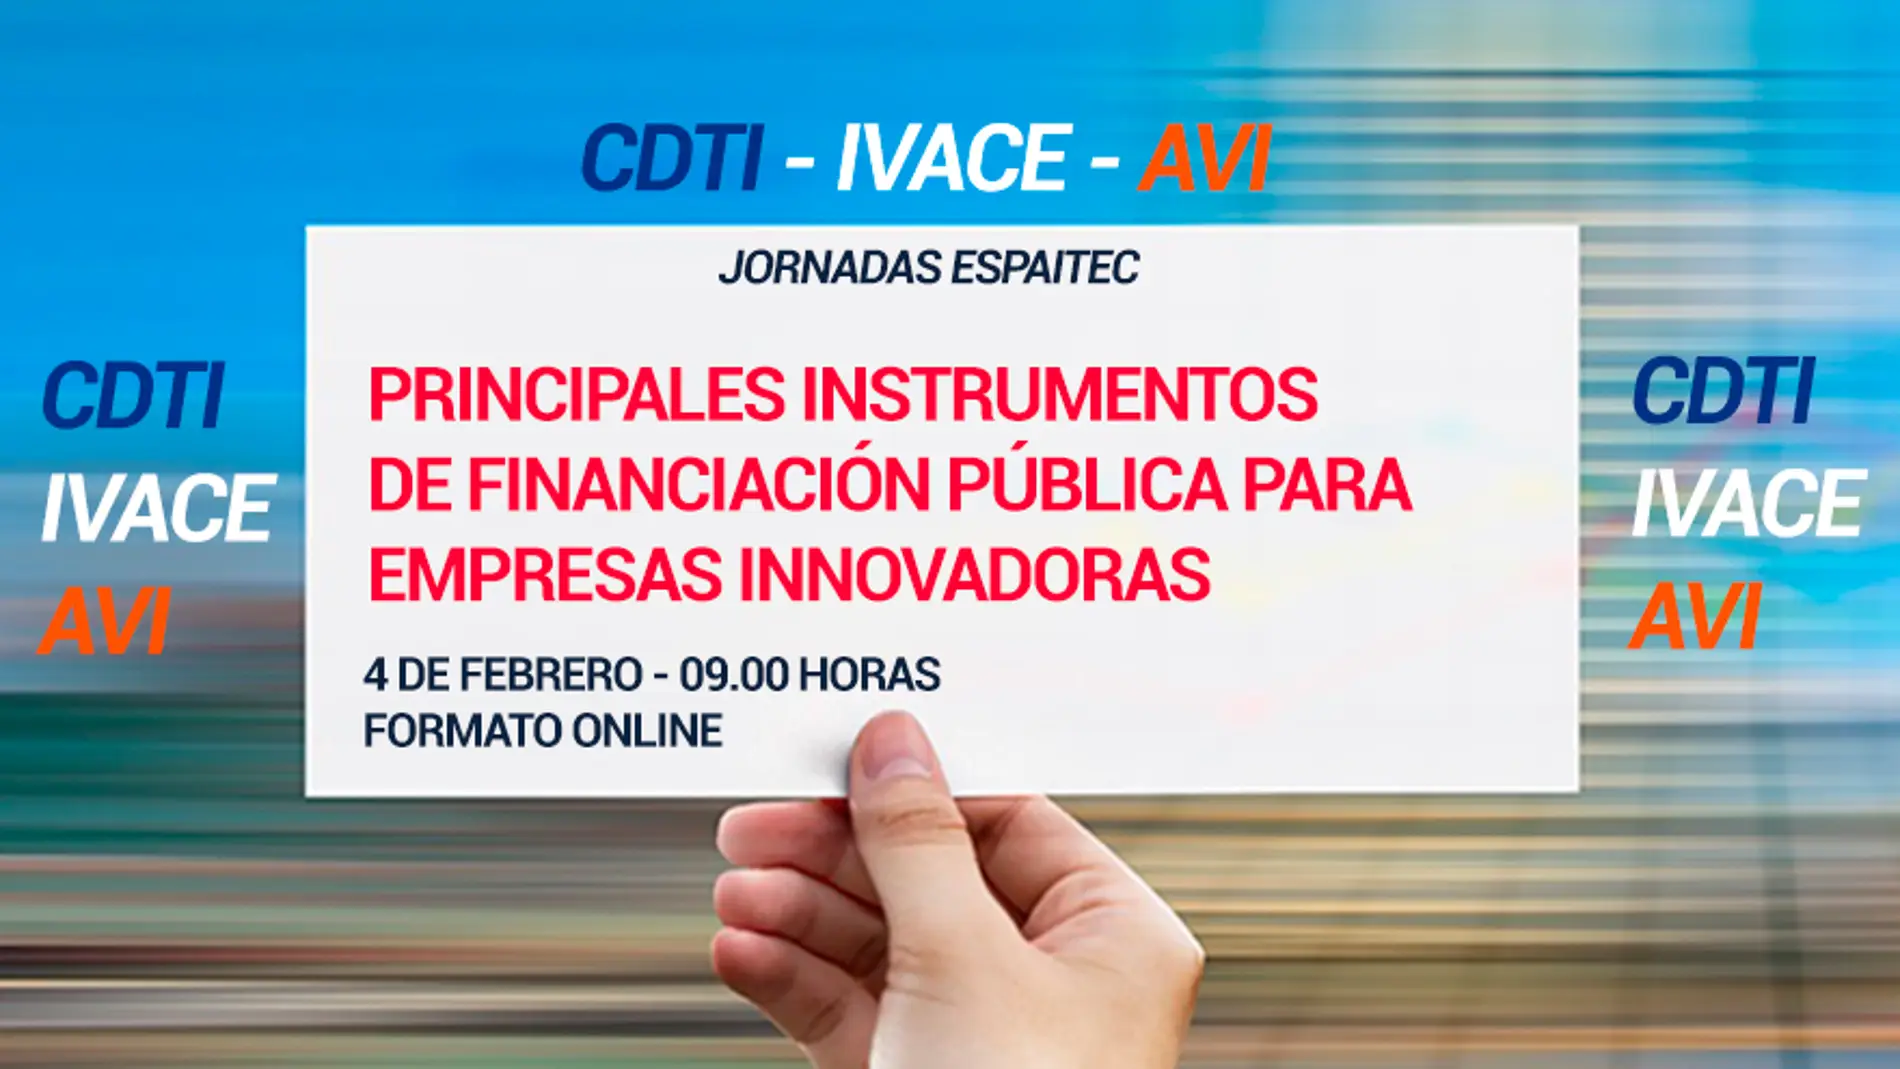 Espaitec organiza una jornada para dar a conocer los principales instrumentos de financiación pública para empresas innovadoras